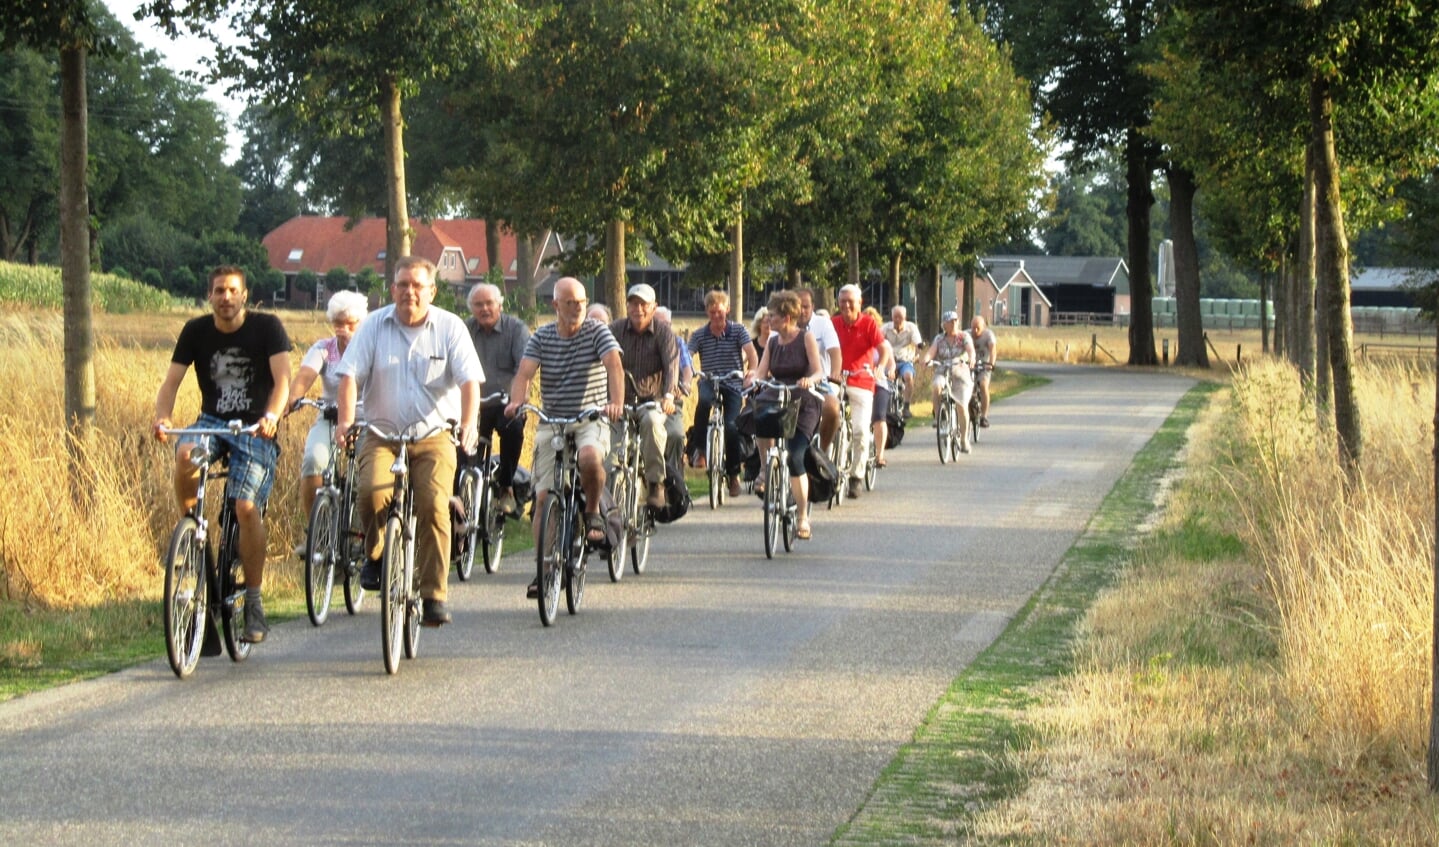 De Progressieve Partij nadert op de fiets het pompstation in Corle. Foto: Bernhard Harfsterkamp